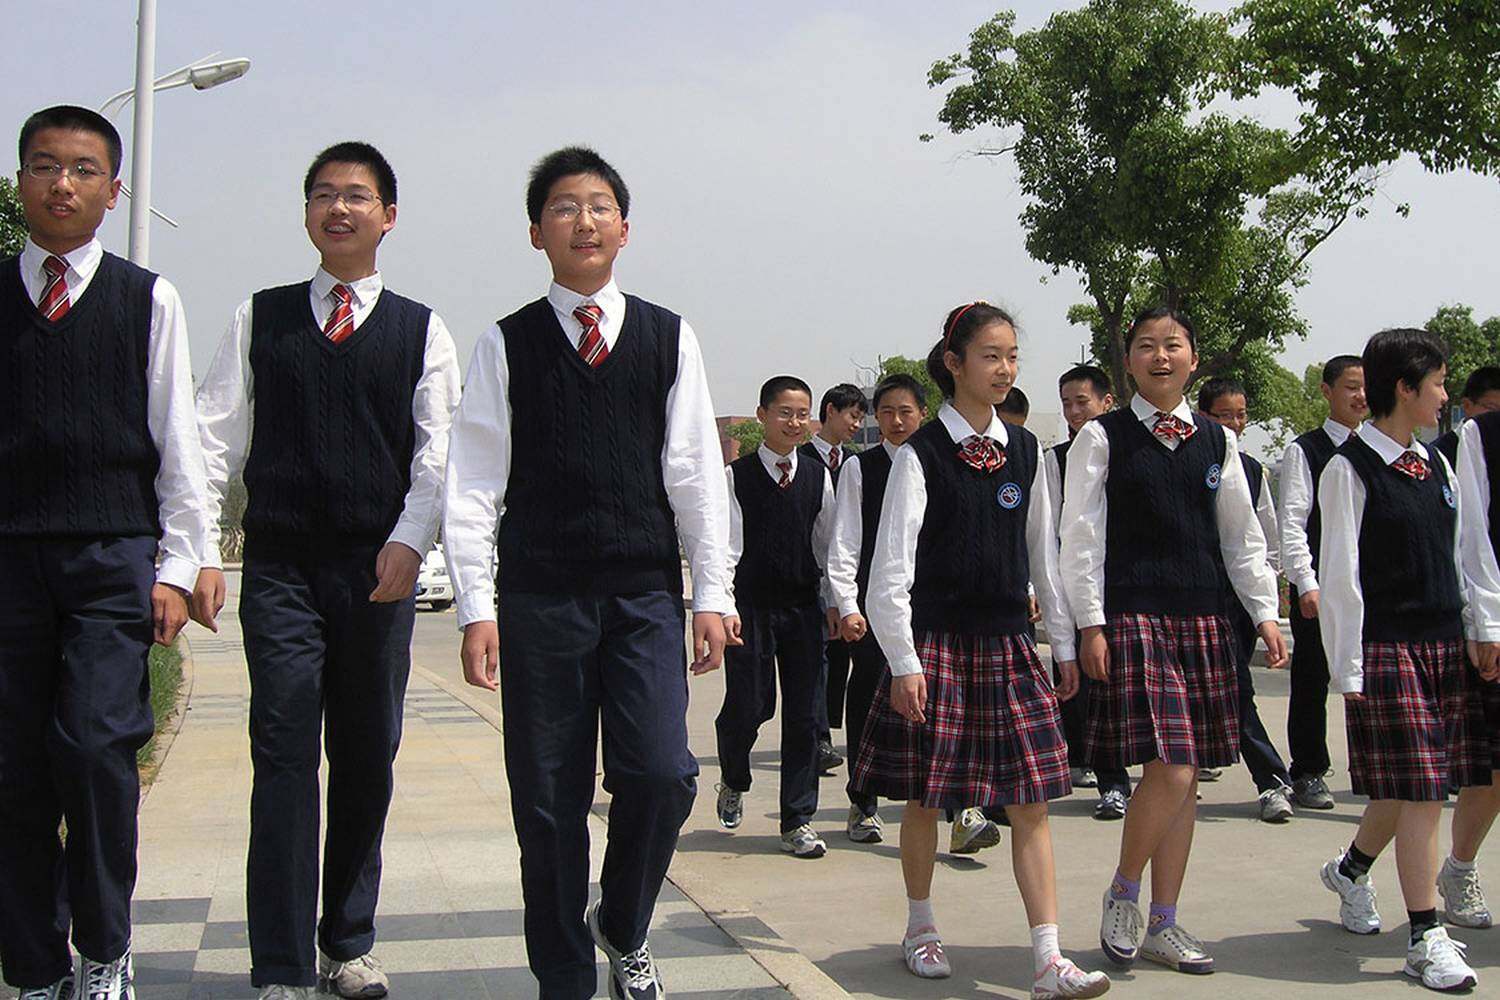 Wuxi Jiangsu Tianyi High School Dipont Education